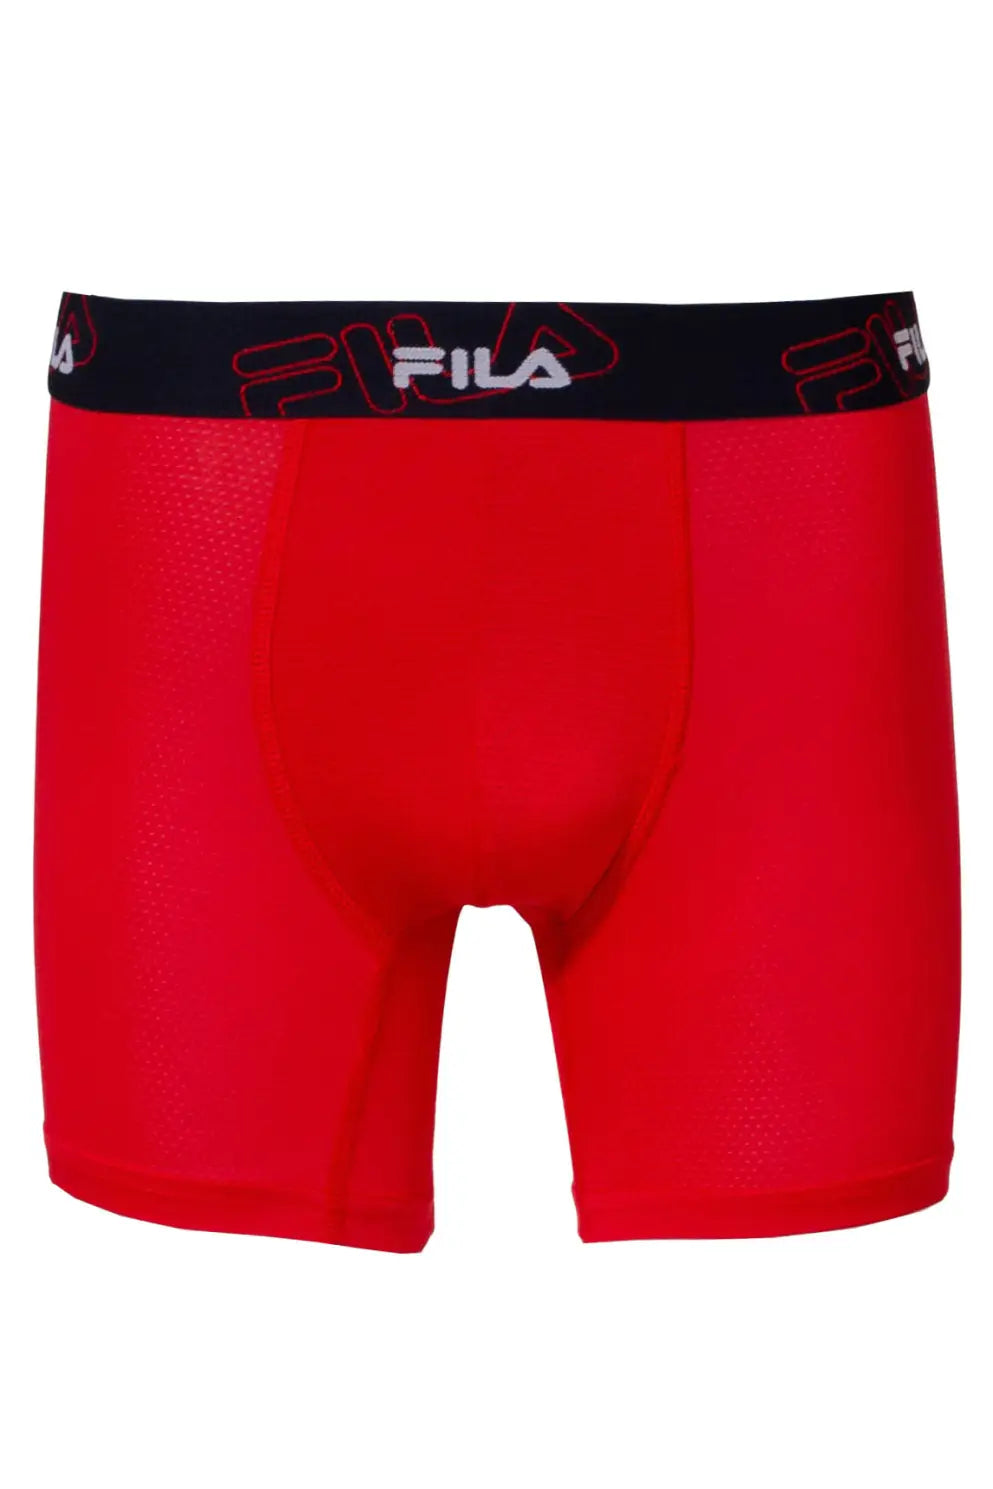 Mens Underwear 4 Pack Microfiber Boxer Briefs for Men Super Soft -  Underwear & Socks